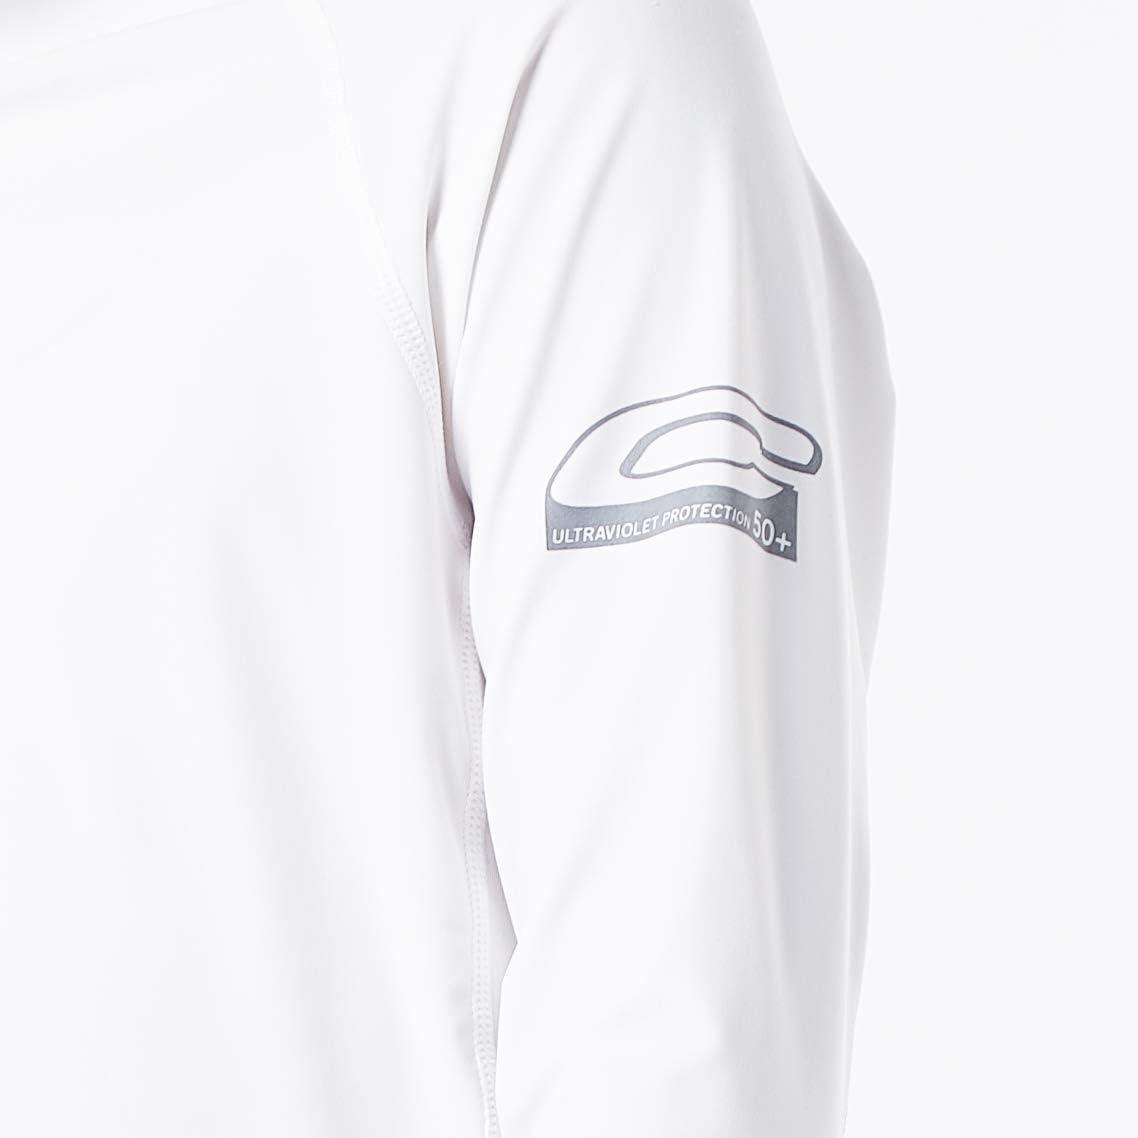 Kids SPF 50 Royal Blue w/ White Logo Rash Guard / Sun Shirt, Long Slee –  SSI Lifestyle